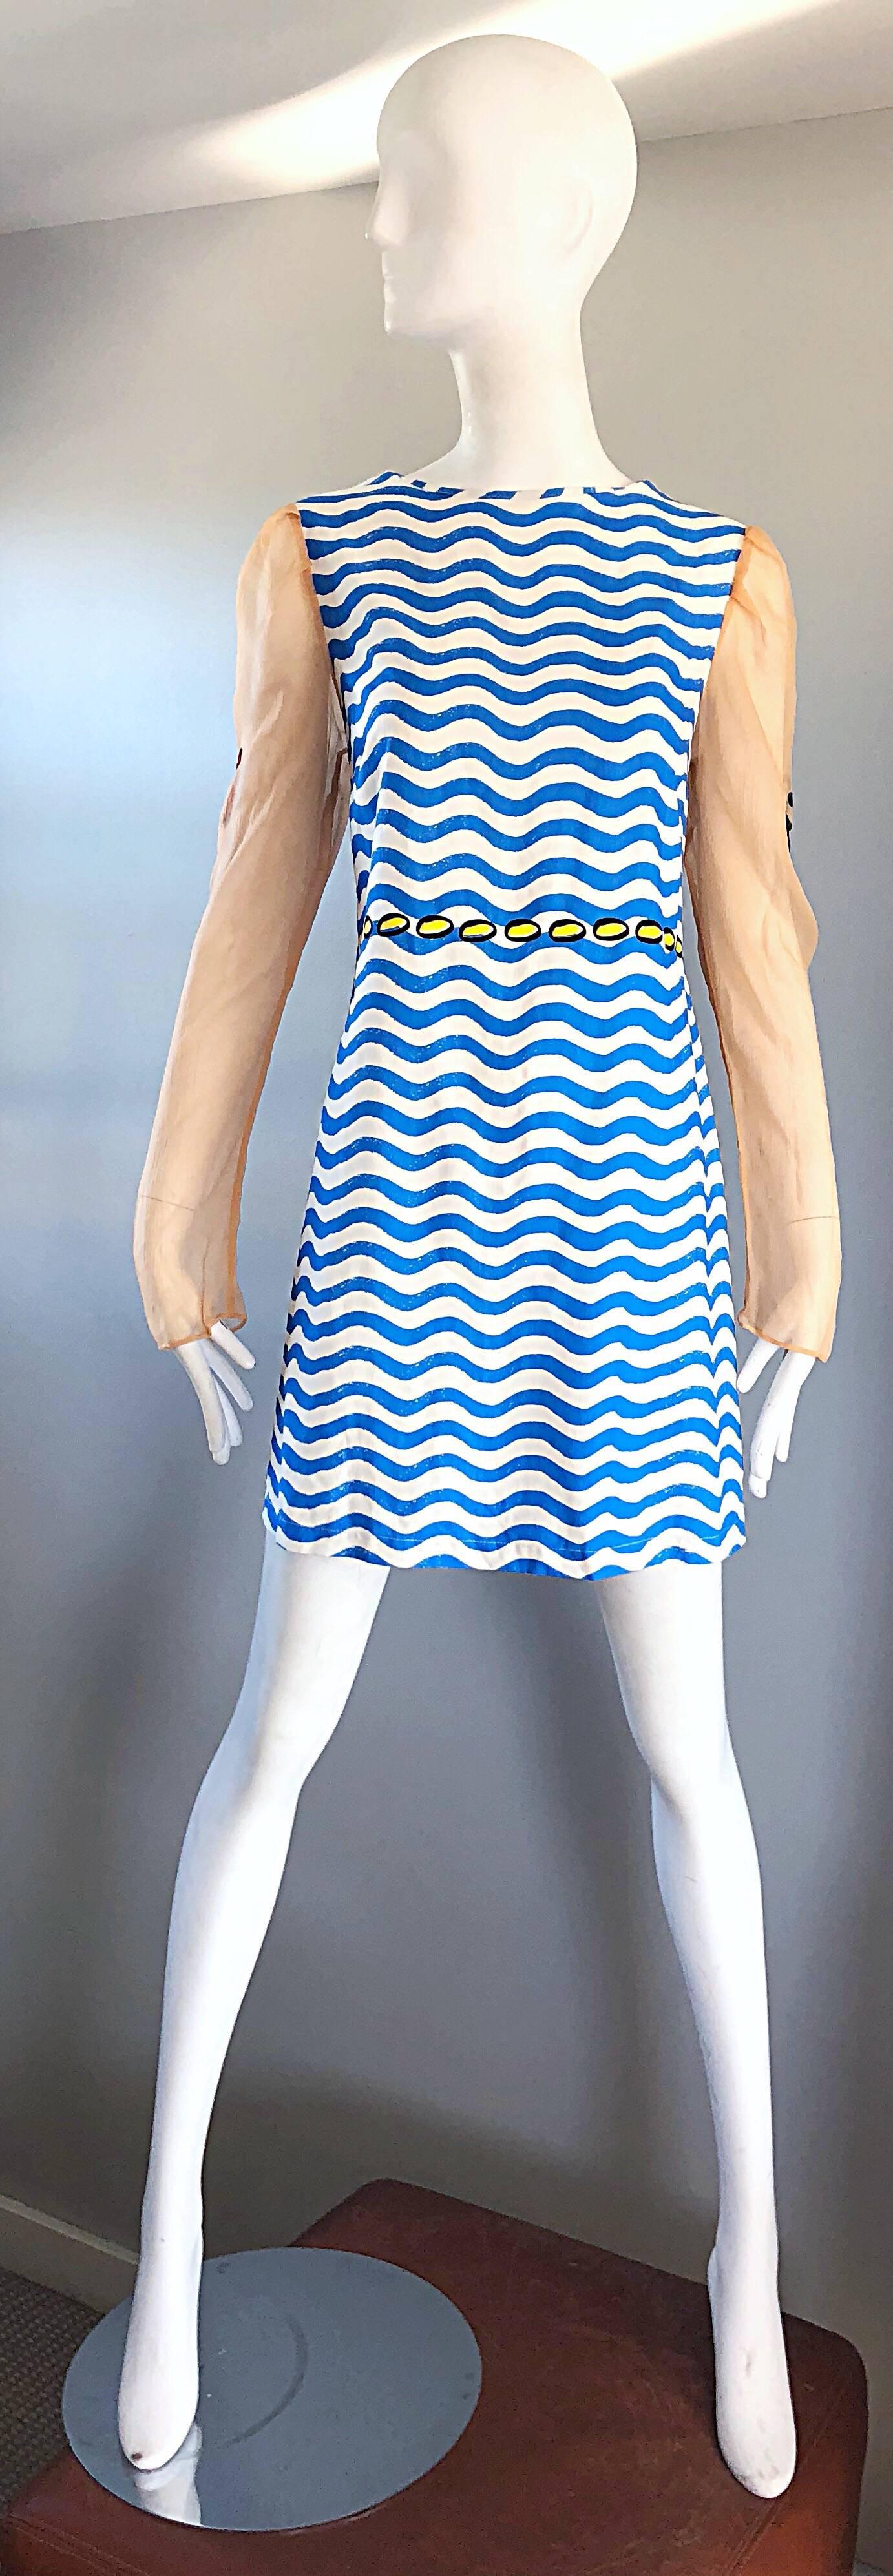 Seltene und limitierte Auflage THE RODNIK BAND Neuheit nautischen Seidenkleid! Das Kleid hat blaue und weiße verschnörkelte Streifen und gelbe Punkte direkt über der Taille. Die Ärmel aus nacktem Seidenchiffon sind mit Trompe-l'oeil-Tattoos auf